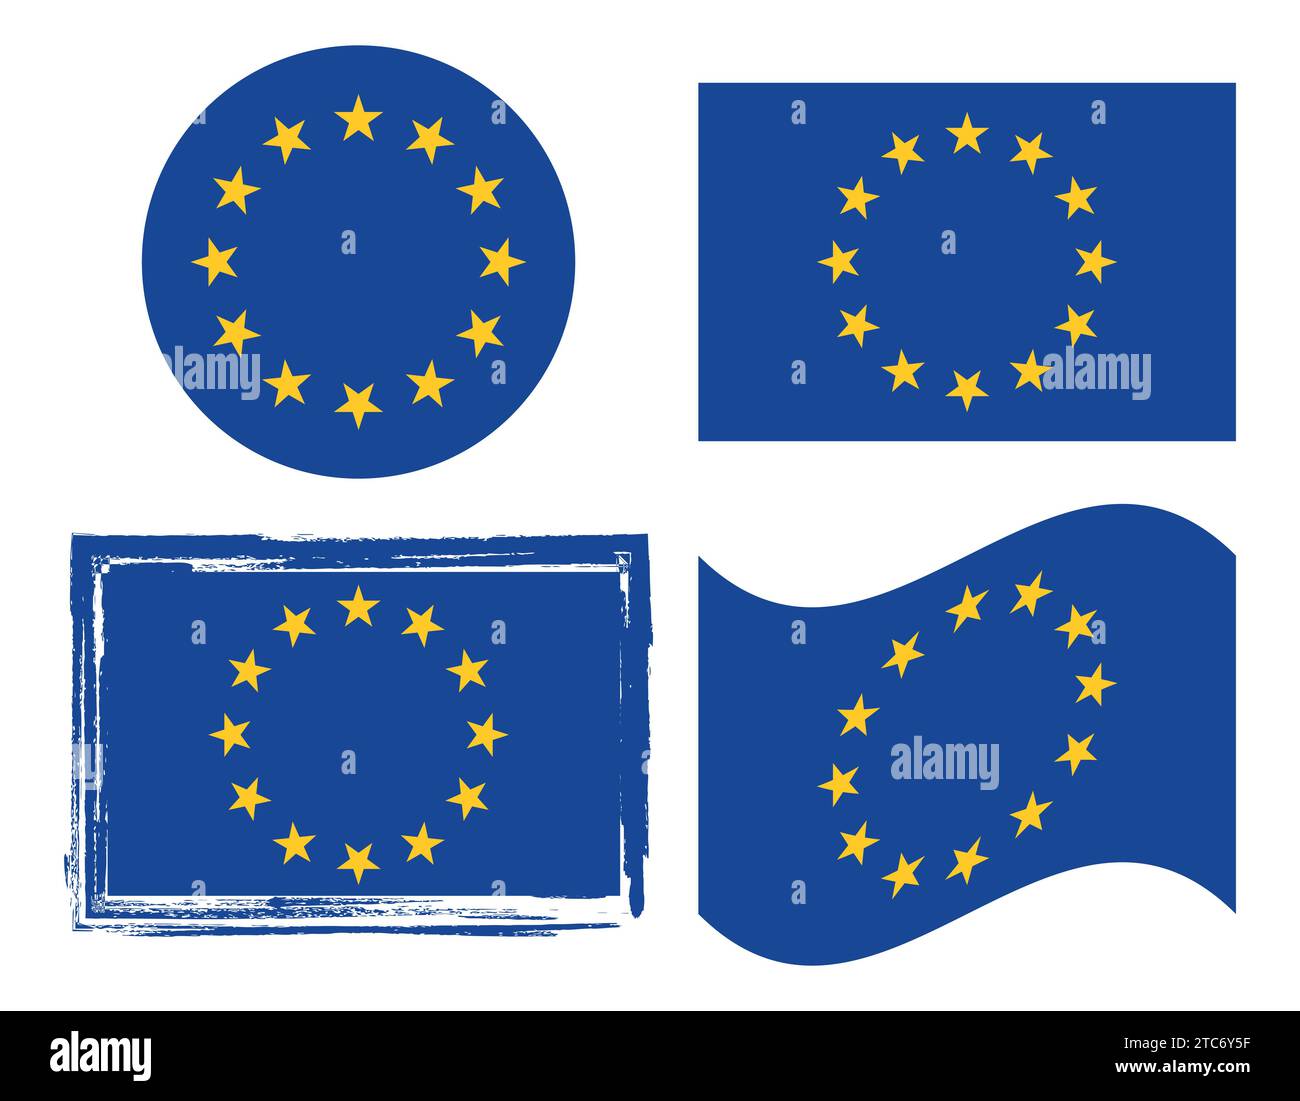 Drapeau national original et simple de l'Europe (UE), drapeau de l'Union européenne vecteur isolé. Illustration de Vecteur